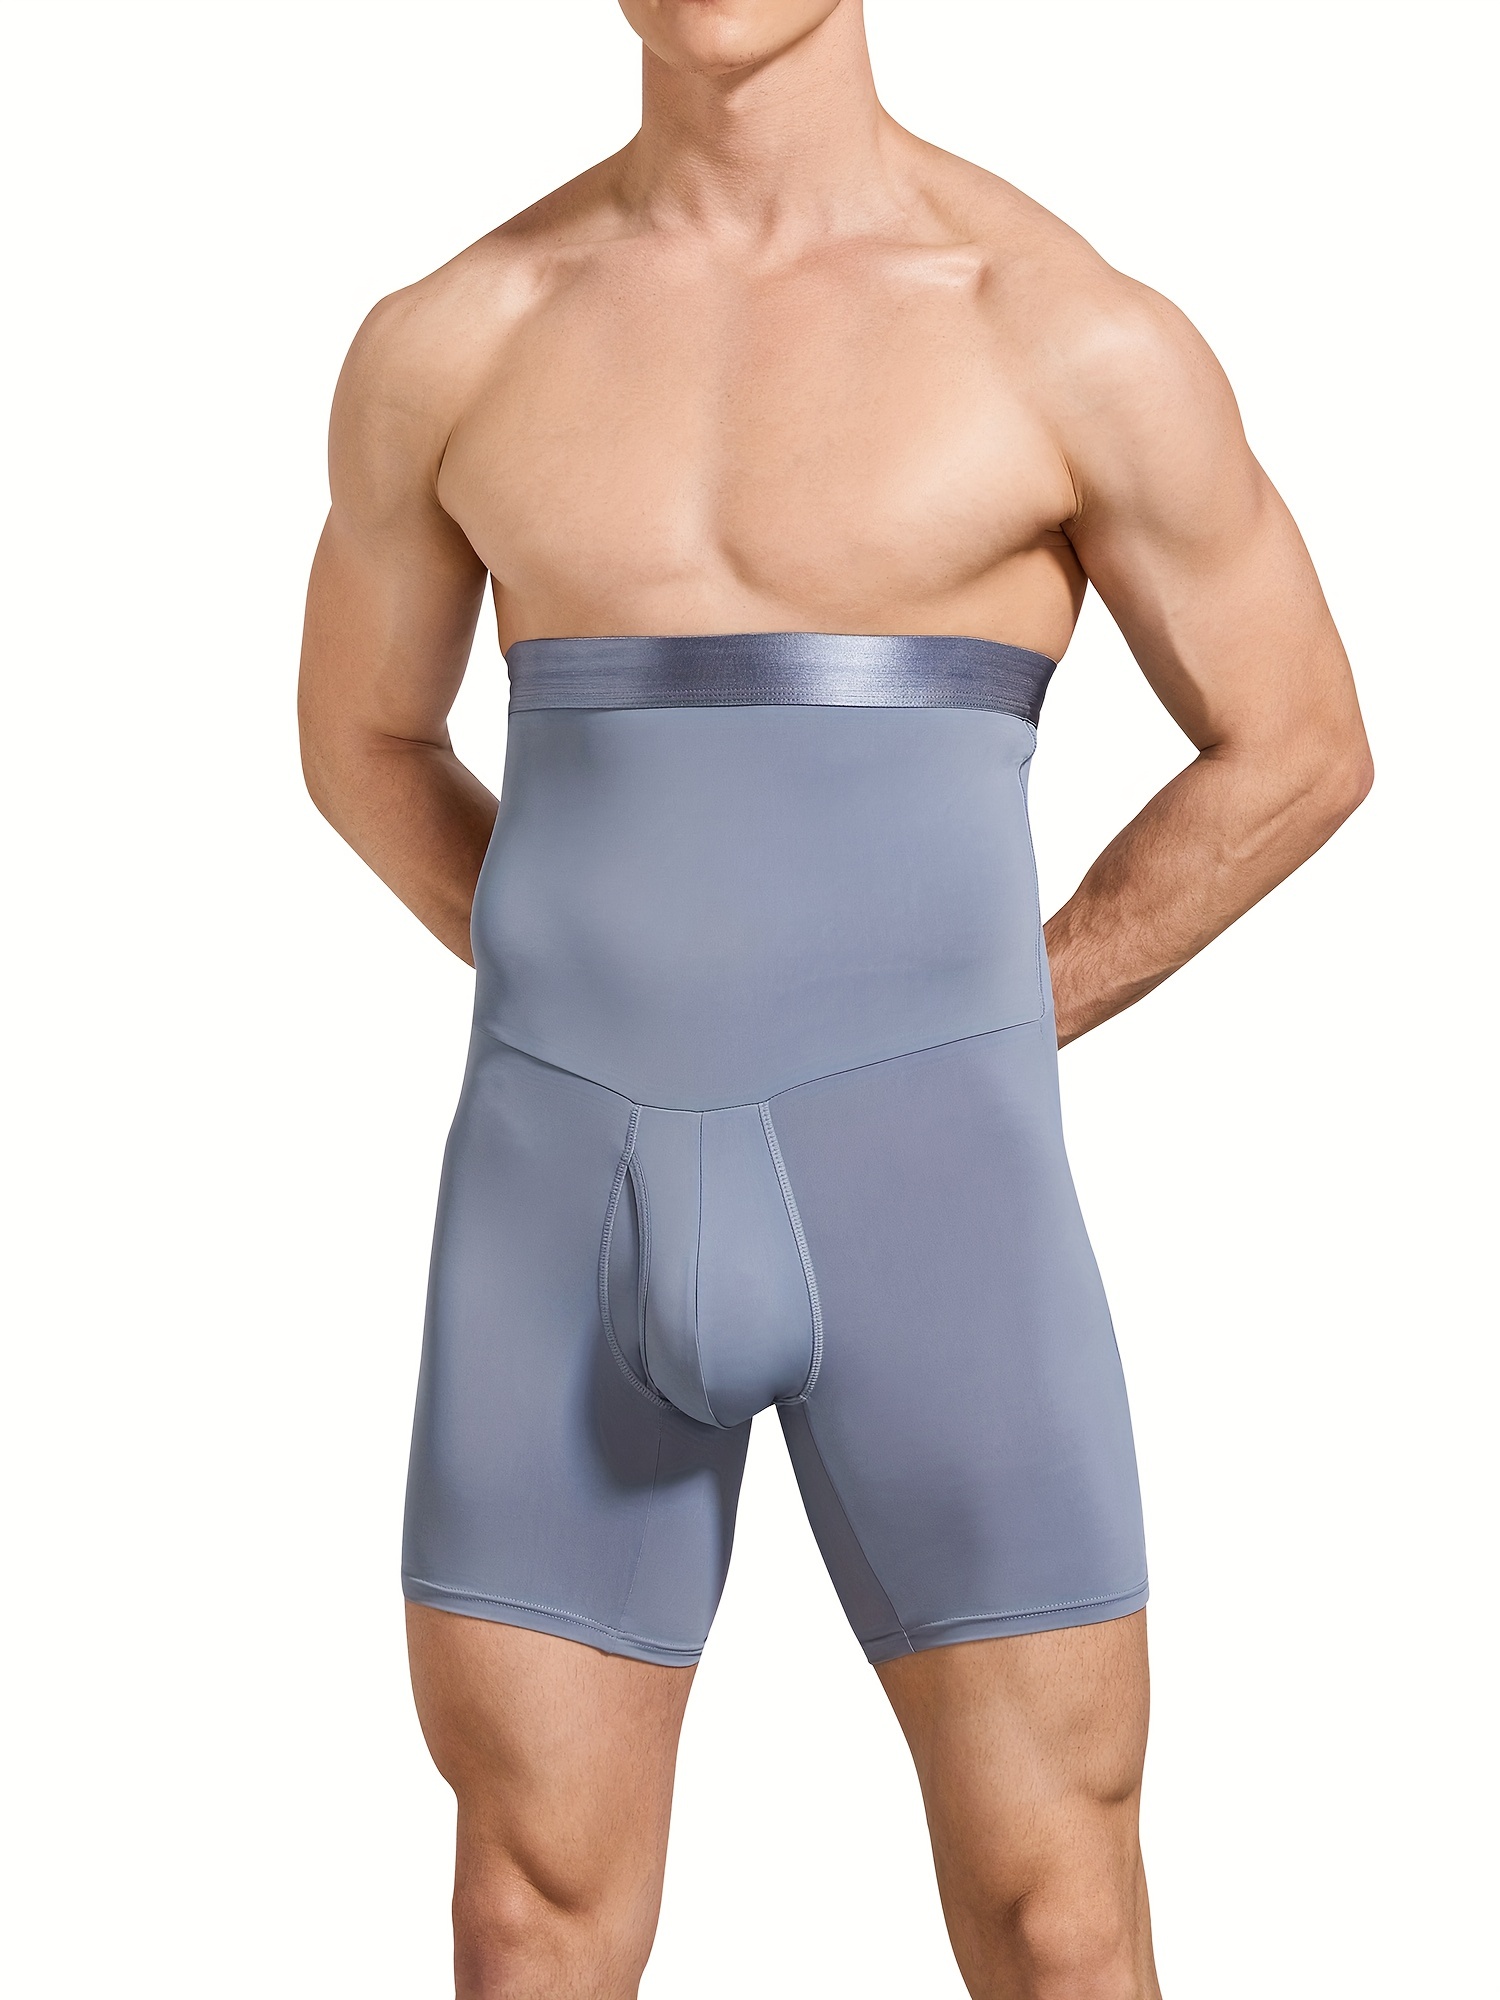 Men High Waist Compression Body Shaper Tummy Control Shorts Thigh